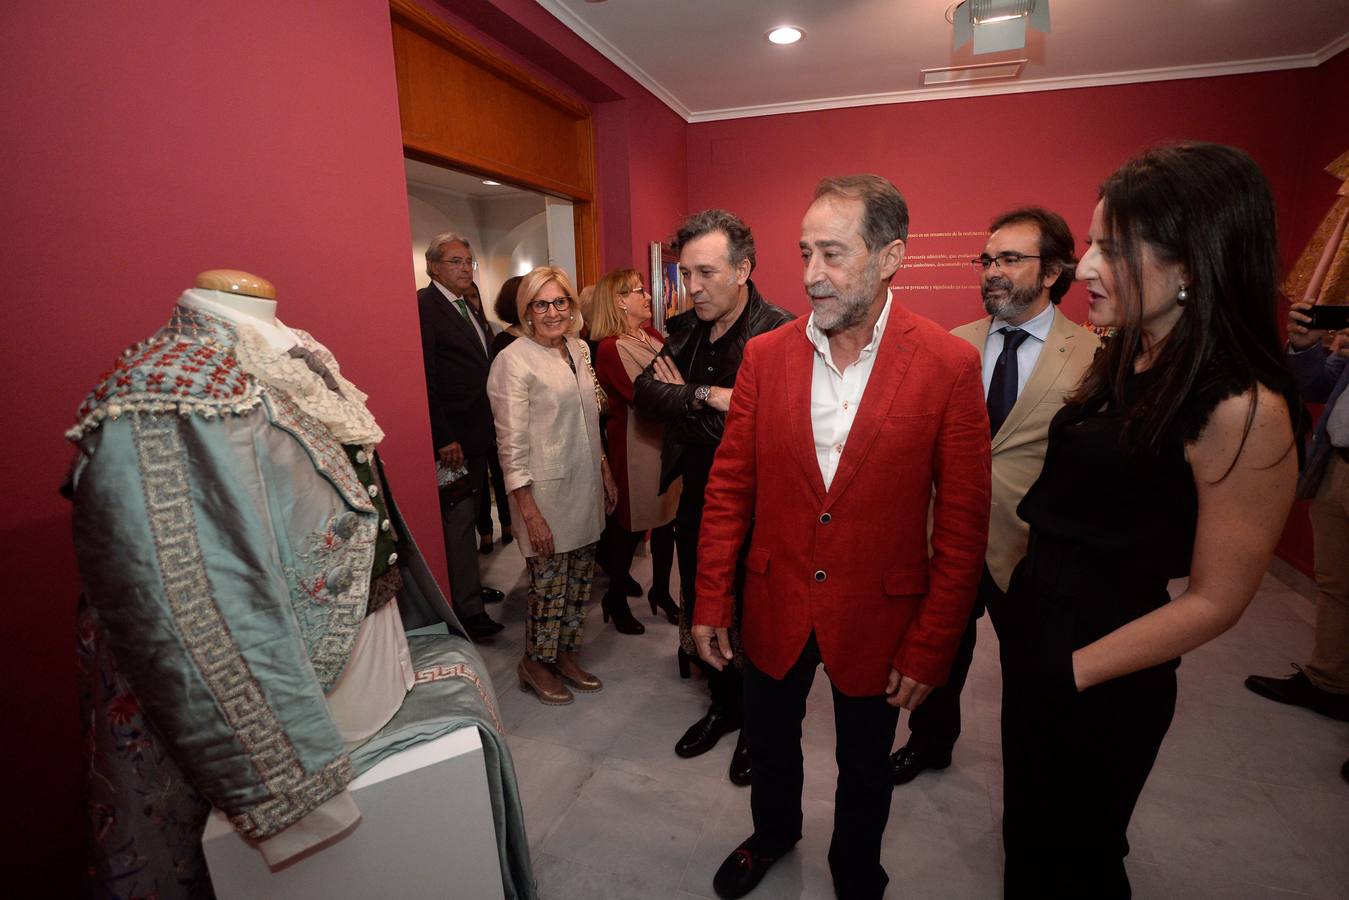 El Mubam acoge una muestra fotográfica de Roberto Kallmeyer y el Museo de la Ciudad de Murcia una serie de capotes de paseo